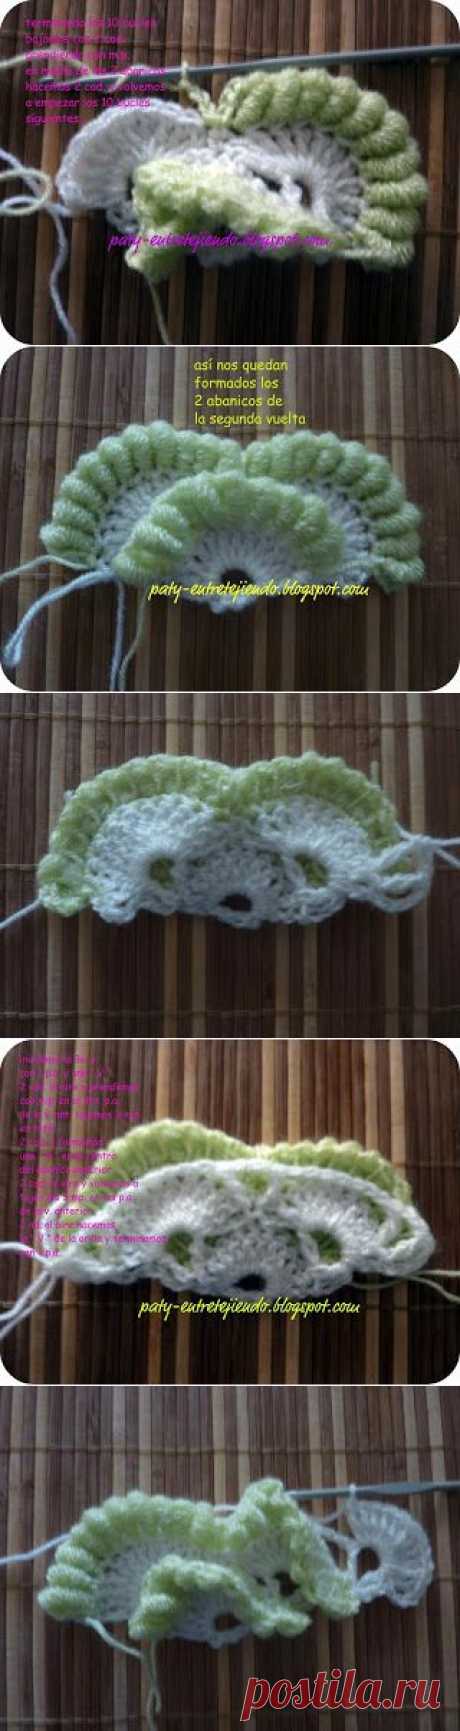 Irish crochet &amp;: Узор с необычными ракушками.